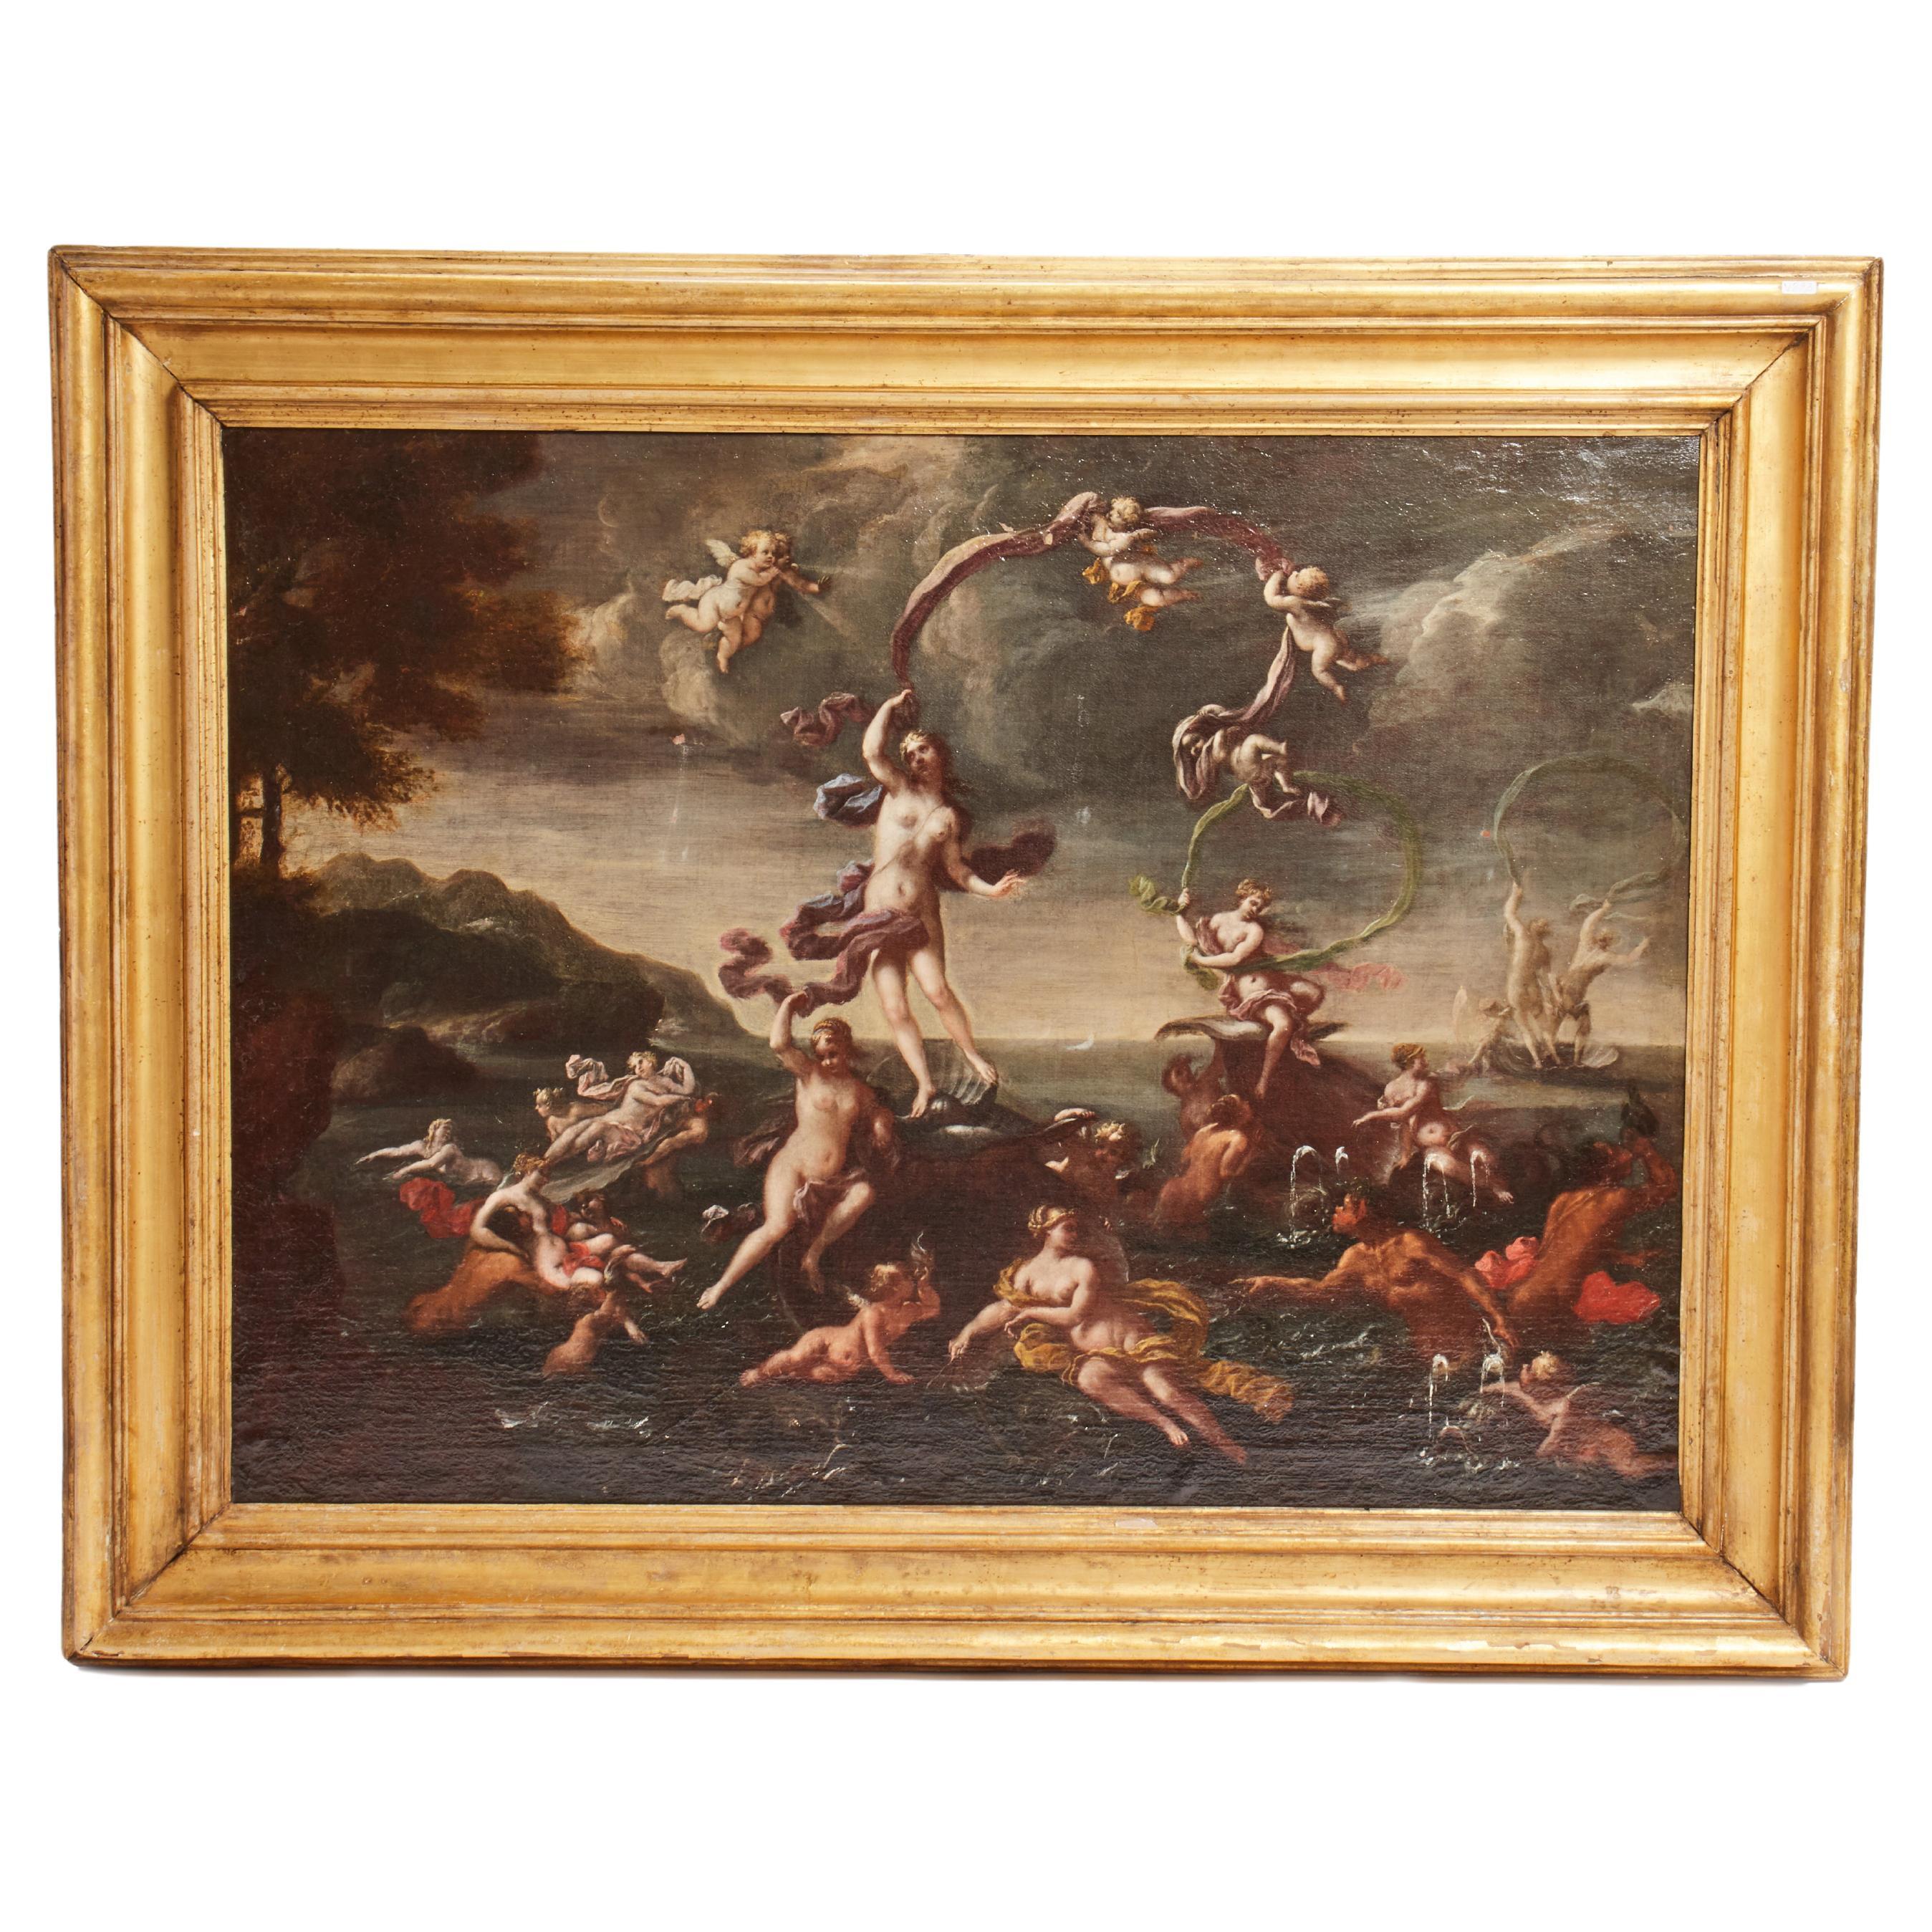 Ölgemälde auf Leinwand von Francesco Perezzoli: Die Geburt der Venus, Italien 1700. 